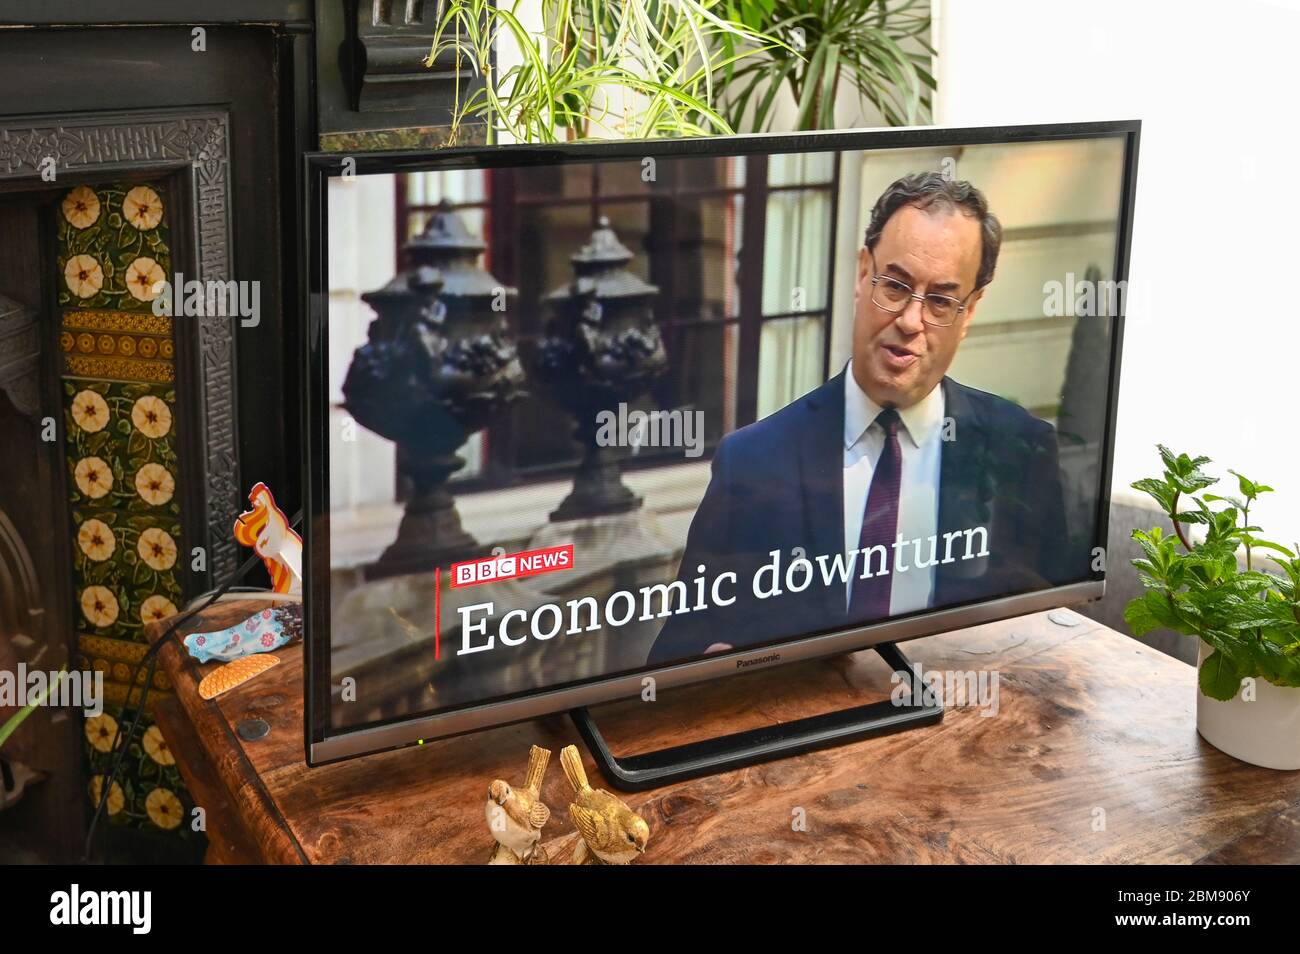 Andrew Bailey, governatore della Bank of England, ha intervistato le notizie della BBC riguardo alle prospettive finanziarie con il coronavirus. Didascalia "recessione economica". Foto Stock